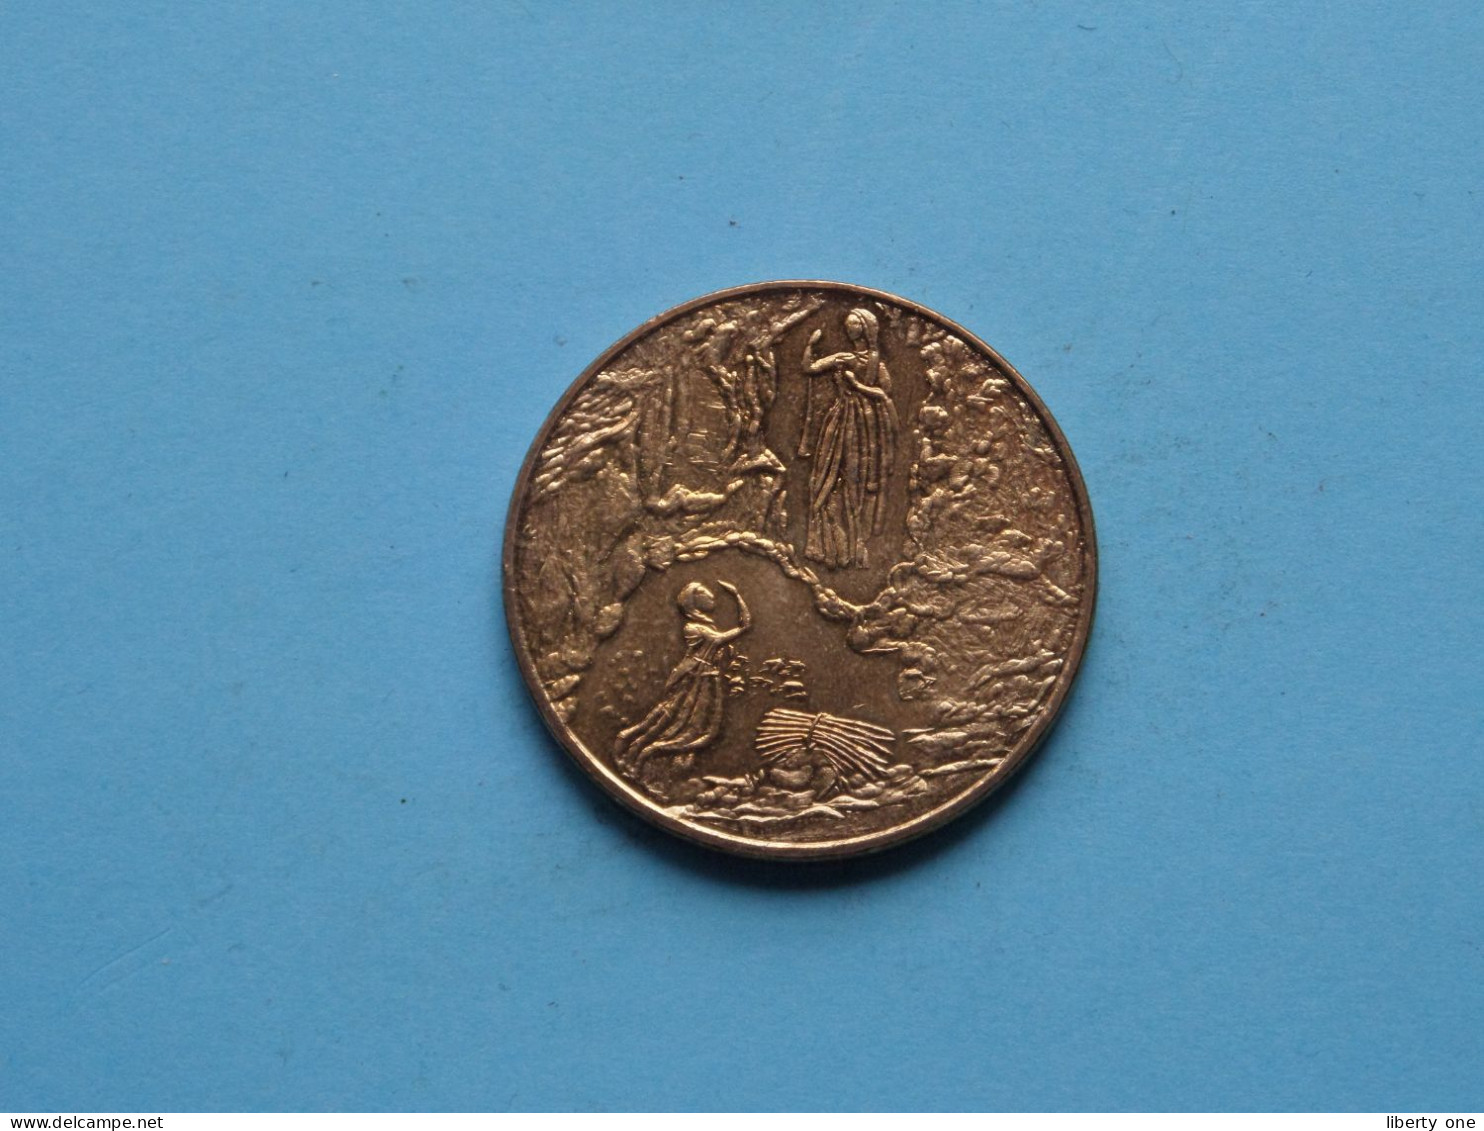 LOURDES 2007 - LAISSEZ VOUS RECONCILIER AVEC DIEU ( Voir / See > Scans ) 34 Mm. ! - Monedas Elongadas (elongated Coins)